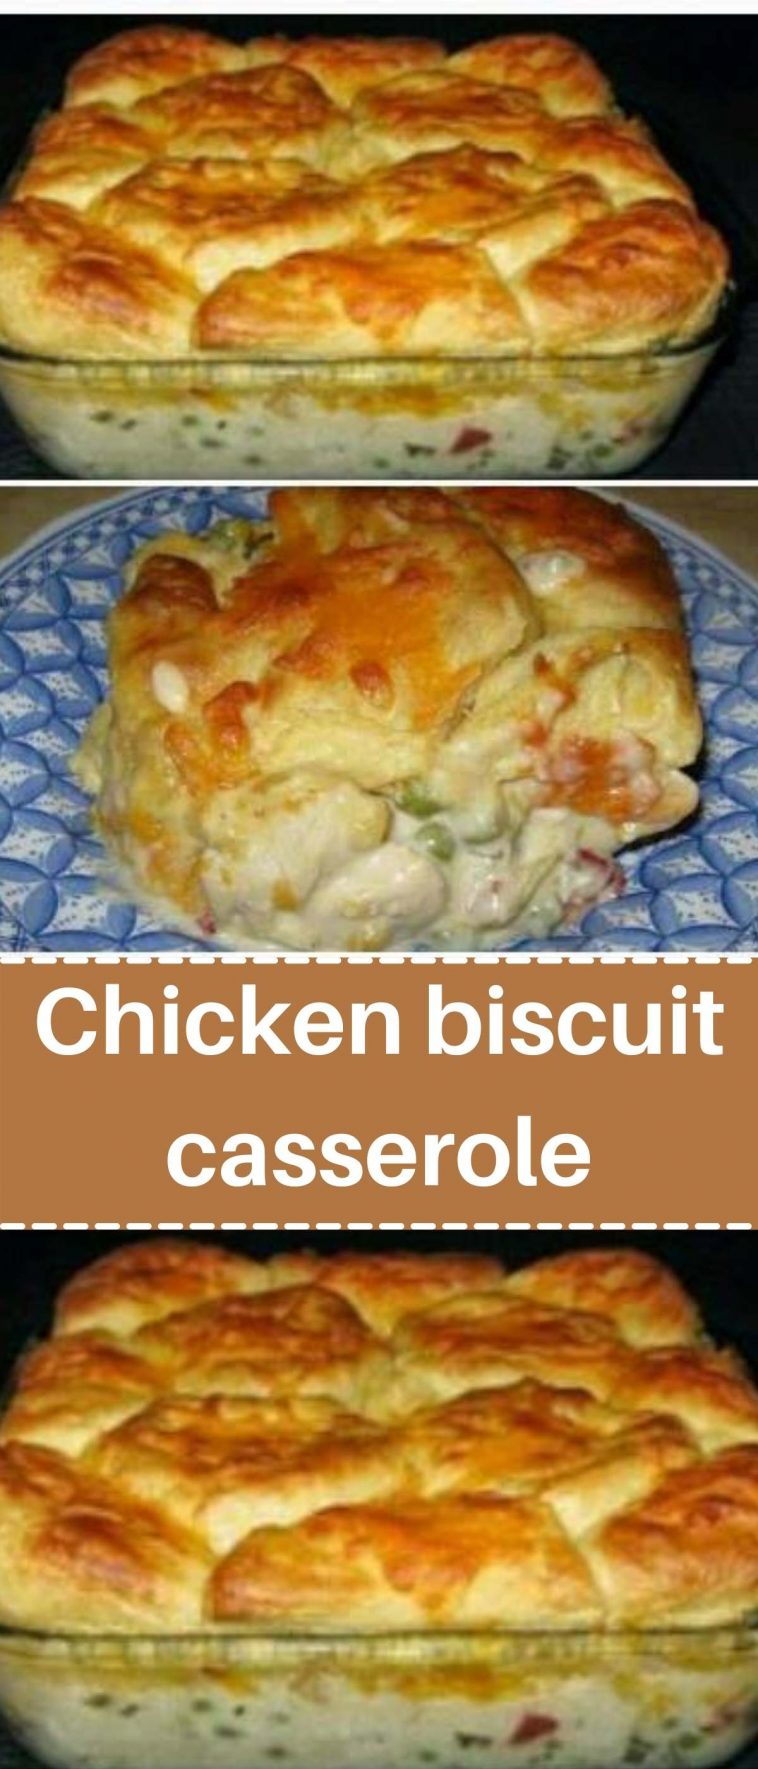 Chicken biscuit casserole